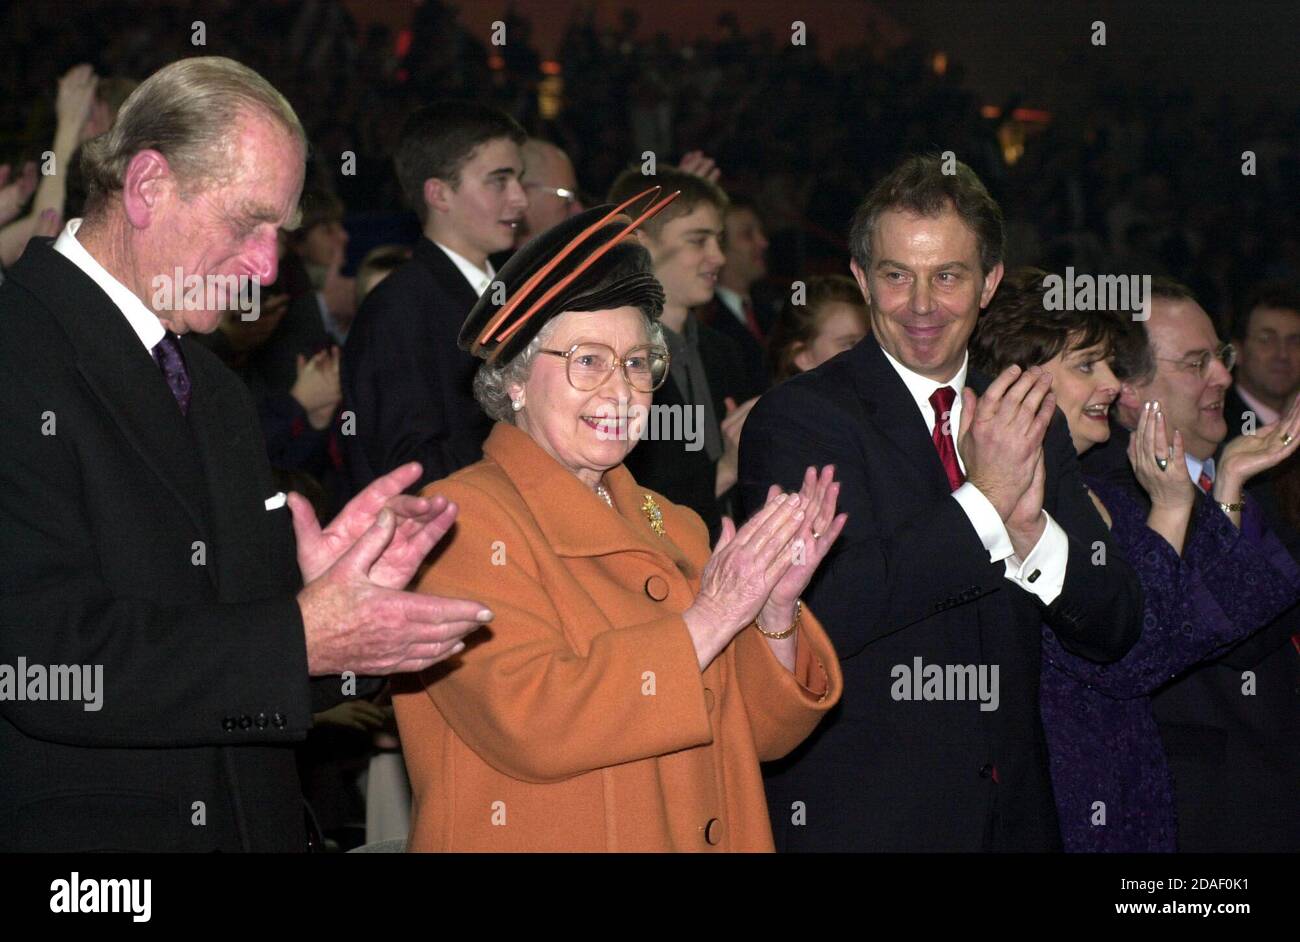 Foto de la Reina Isabel II, el Duque de Edimburgo y el entonces primer Ministro Tony Blair en la ceremonia de apertura de la cúpula del Milenio en Greenwich, Londres. Foto de stock